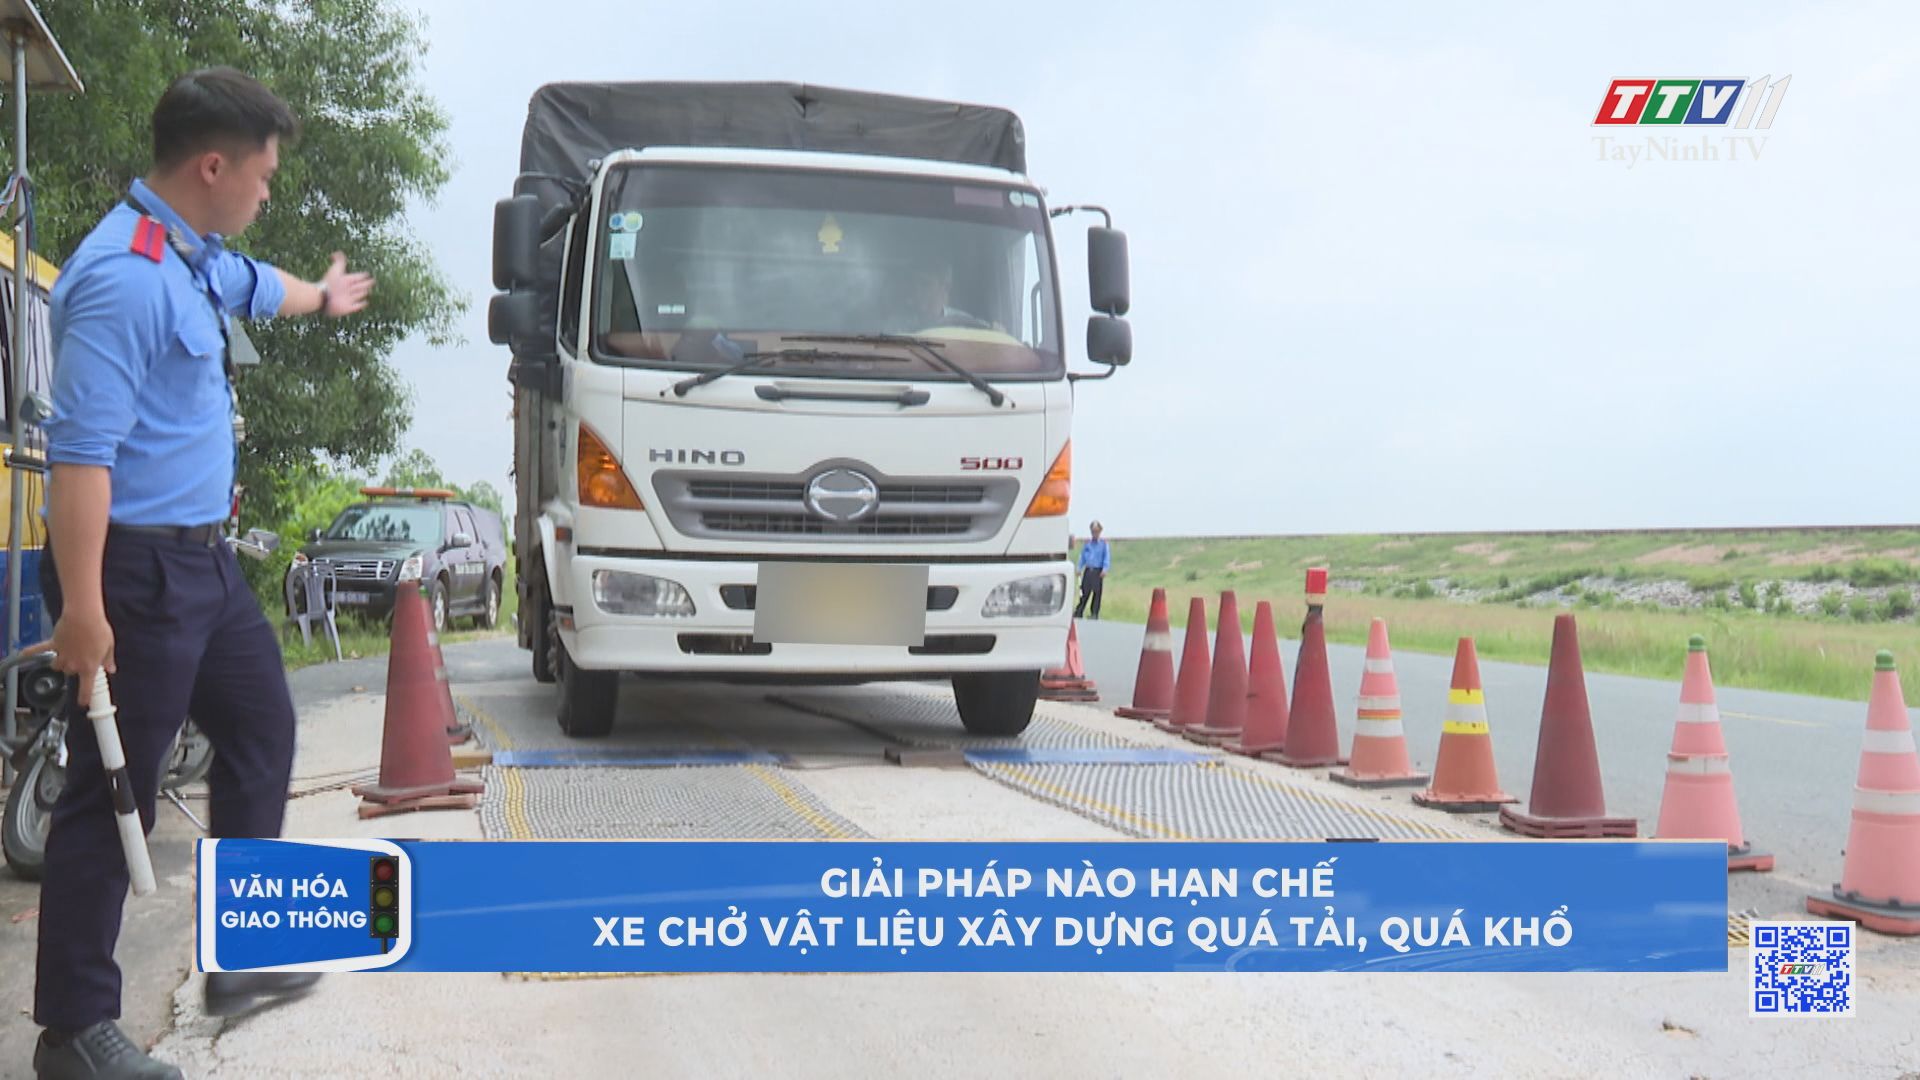 Giải pháp nào hạn chế xe chở vật liệu xây dựng quá tải, quá khổ | Văn hóa giao thông | TayNinhTV